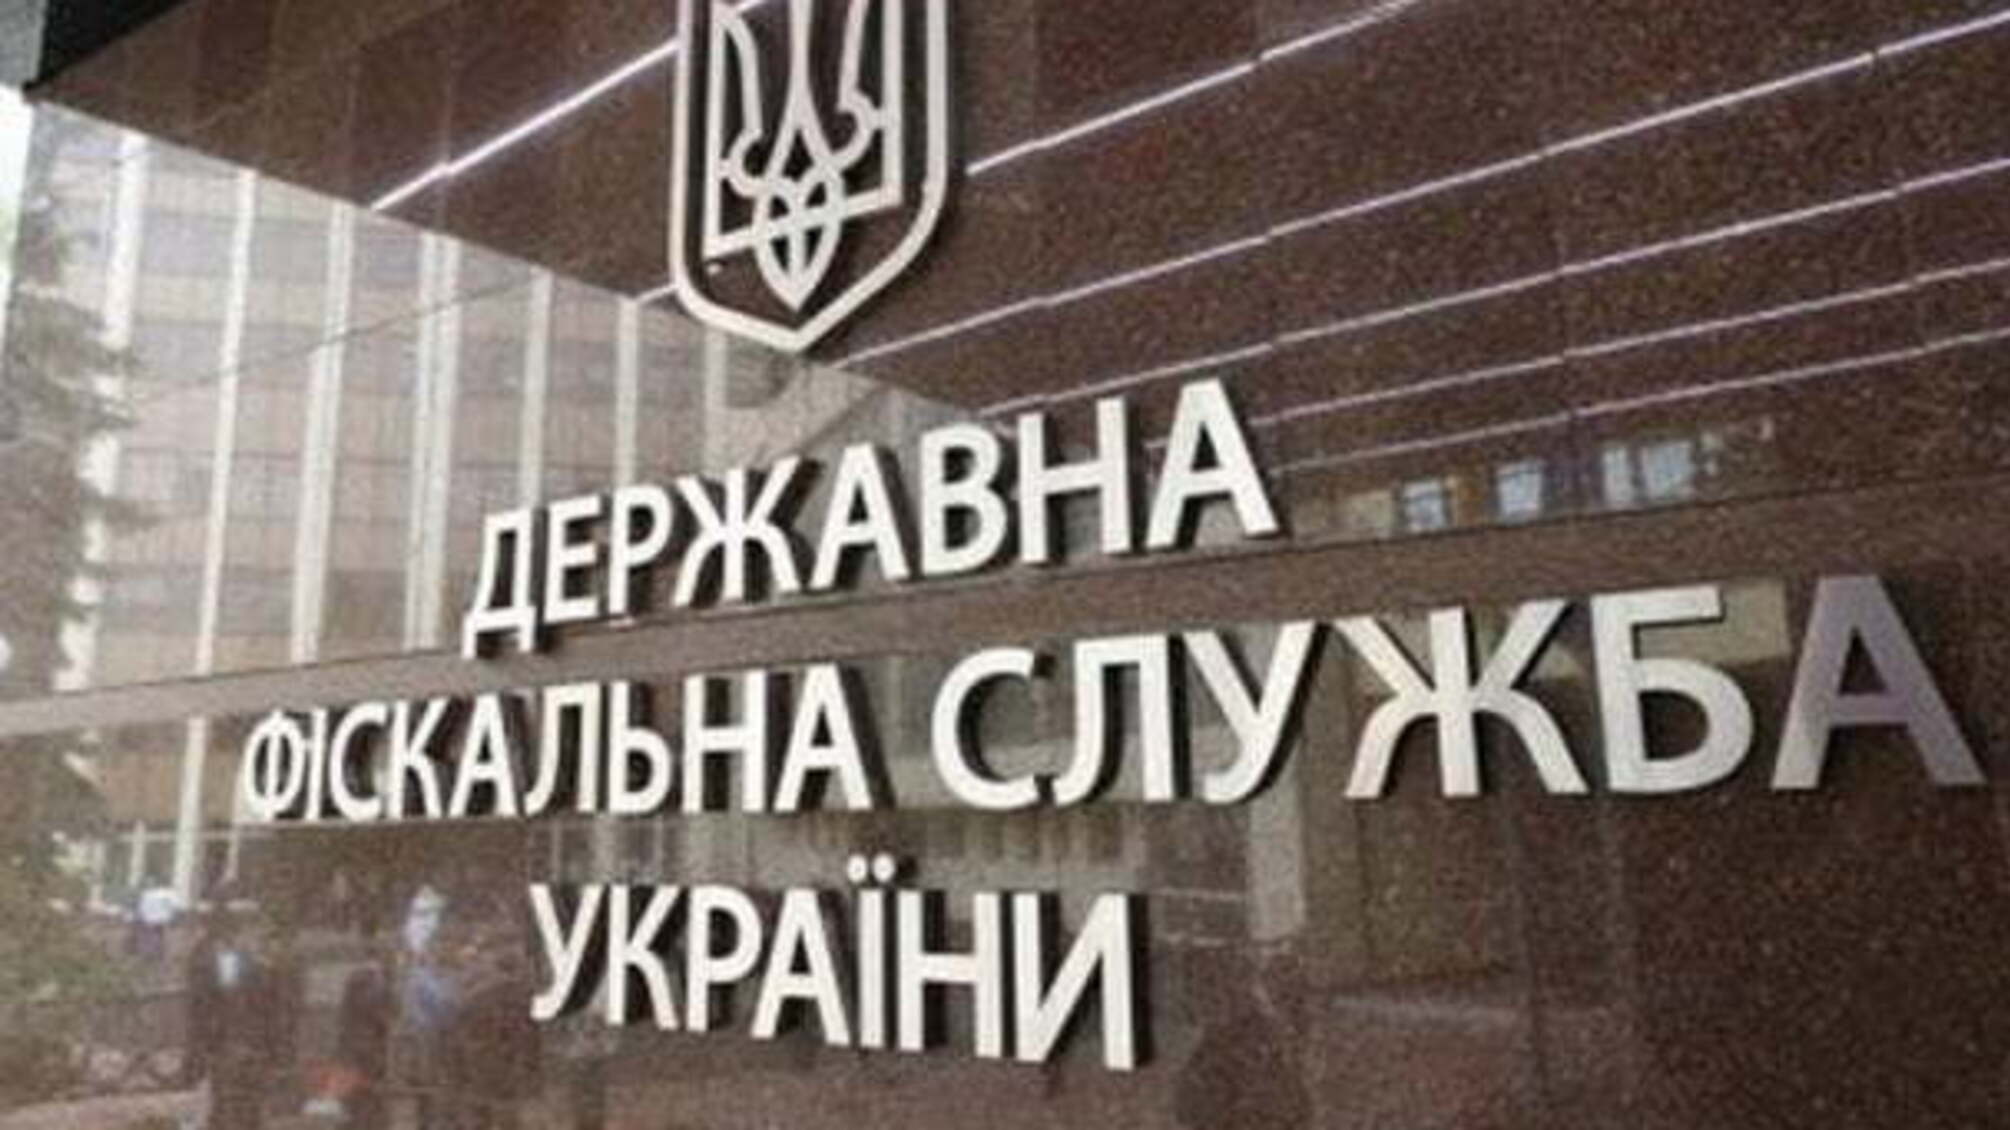 Новини ДФС: на Київщині викрито незаконне виробництво та збут паливно-мастильних матеріалів